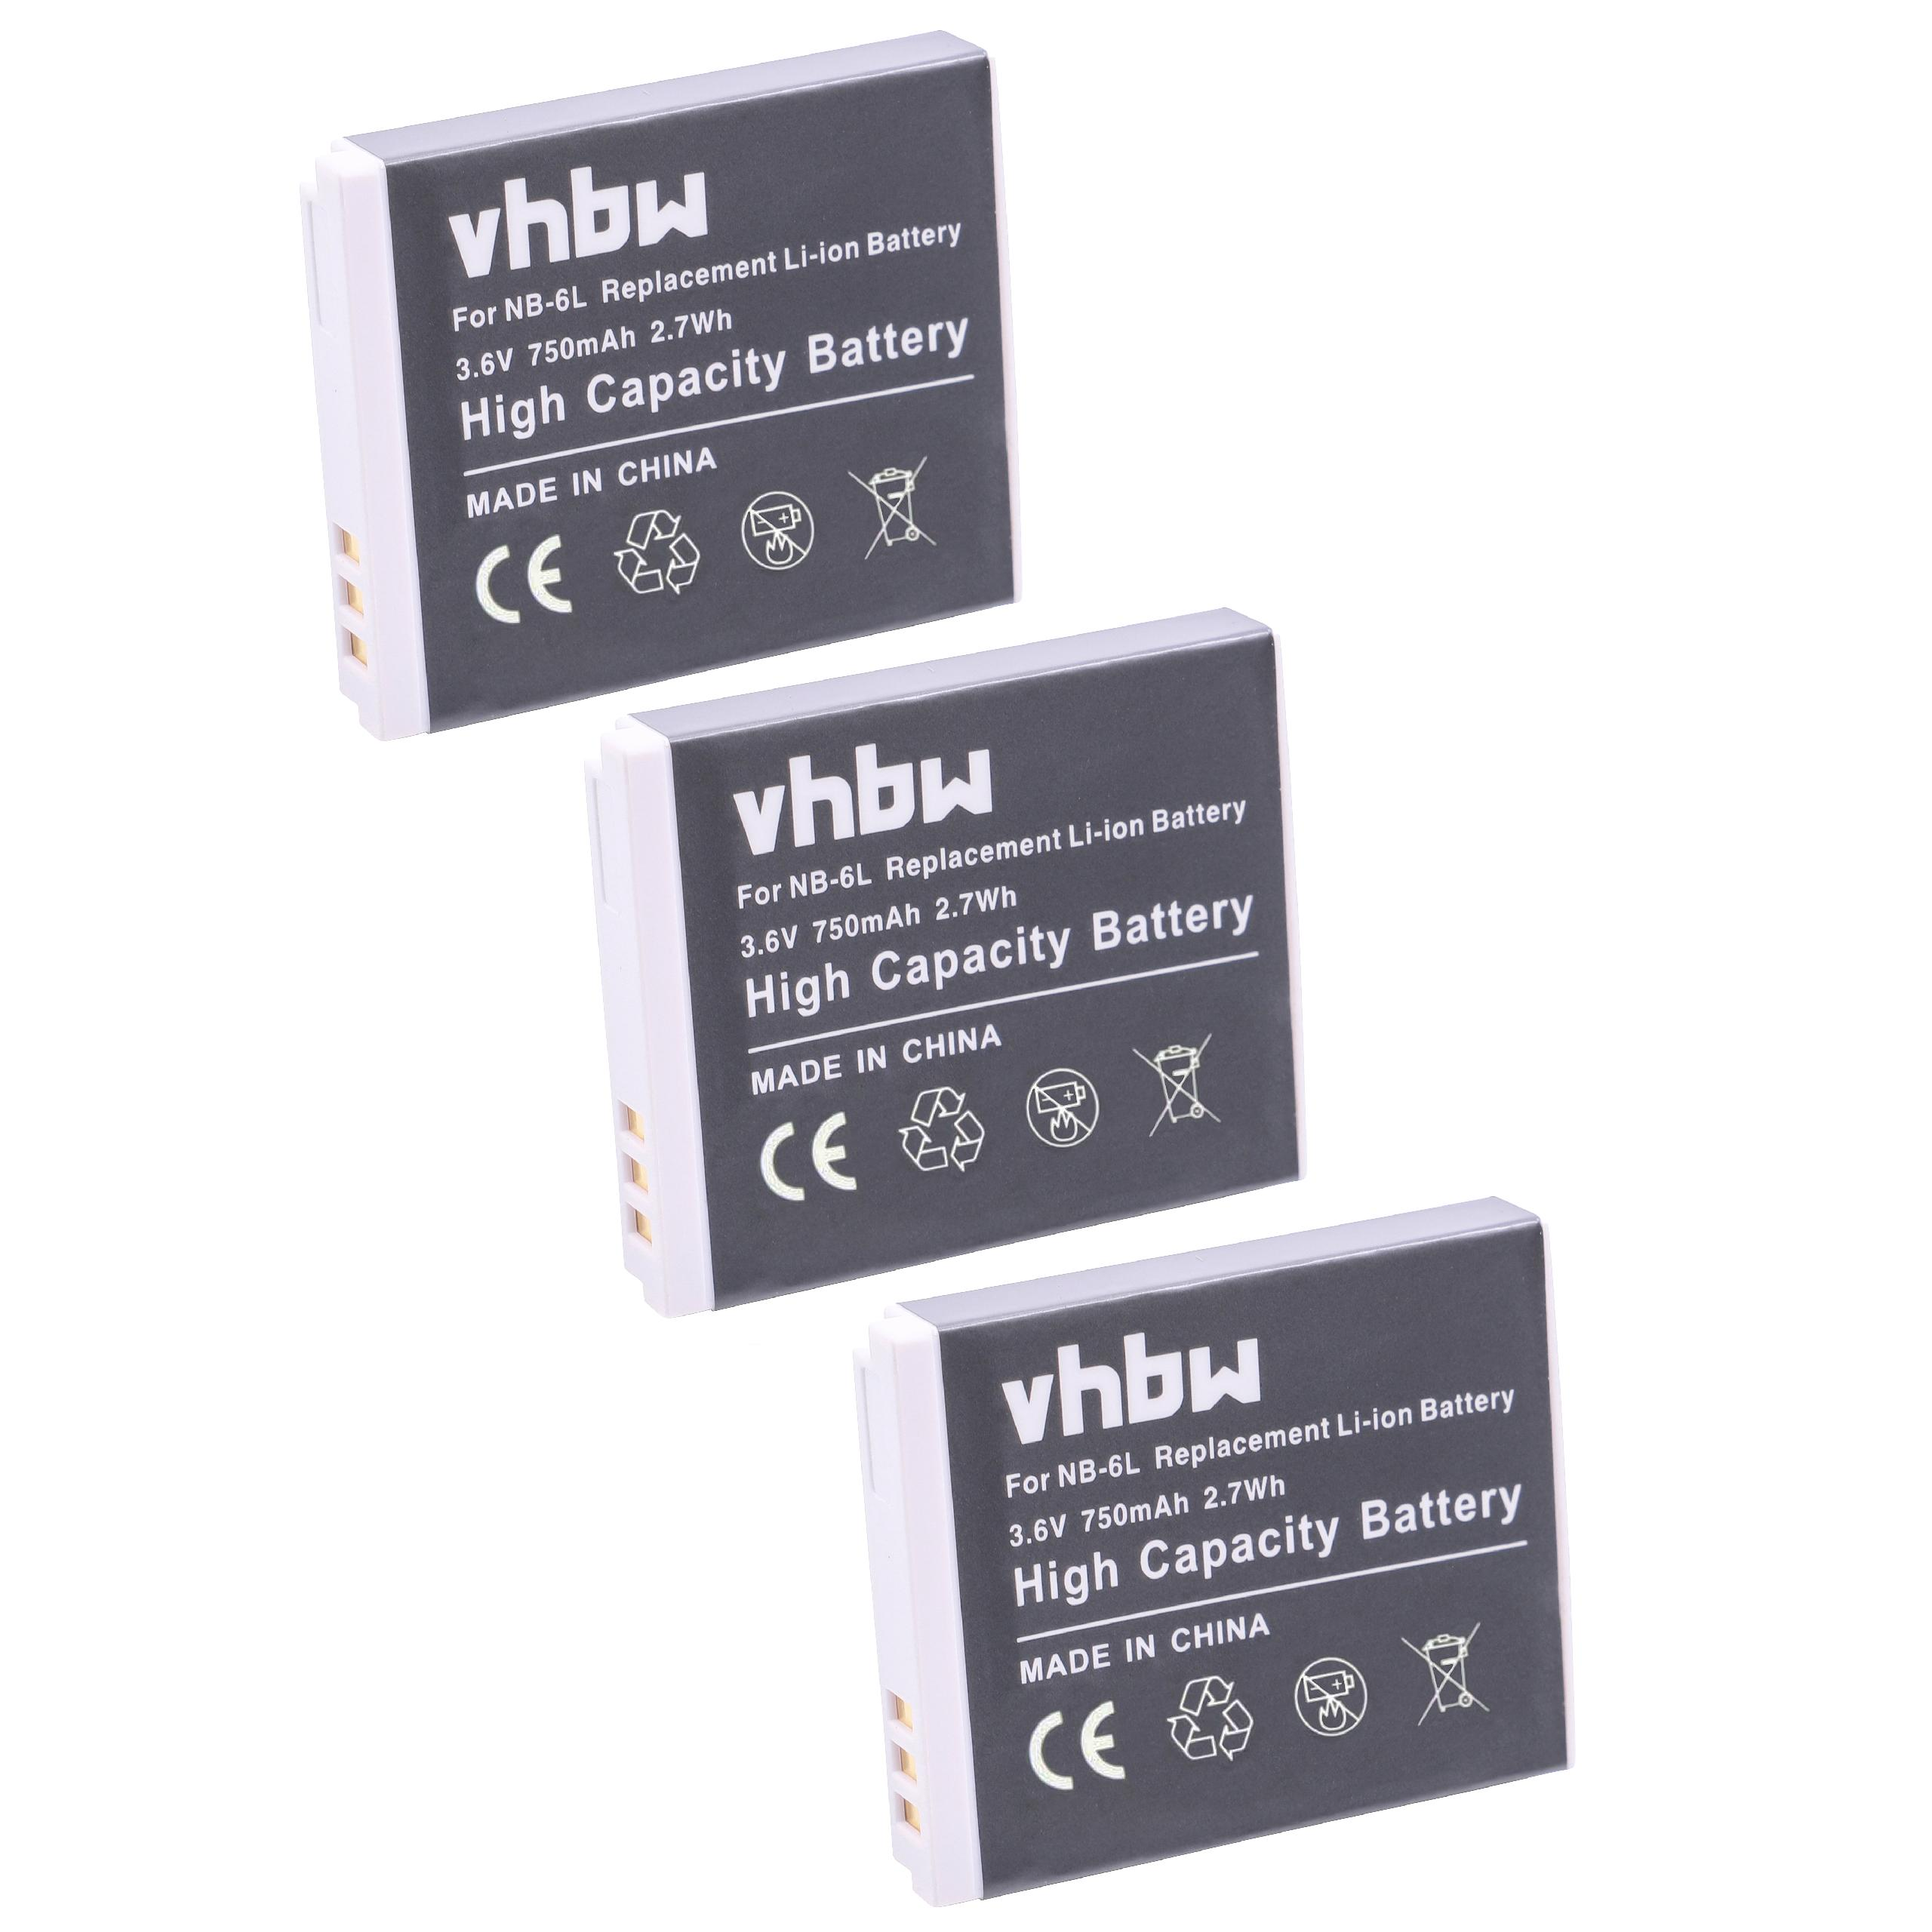 VHBW kompatibel Ixus 25is, Akku 3.6 mit 310HS, Volt, Canon 750 95is, 200is 300HS, 210, Li-Ion Kamera, 85is, Digital - 105is